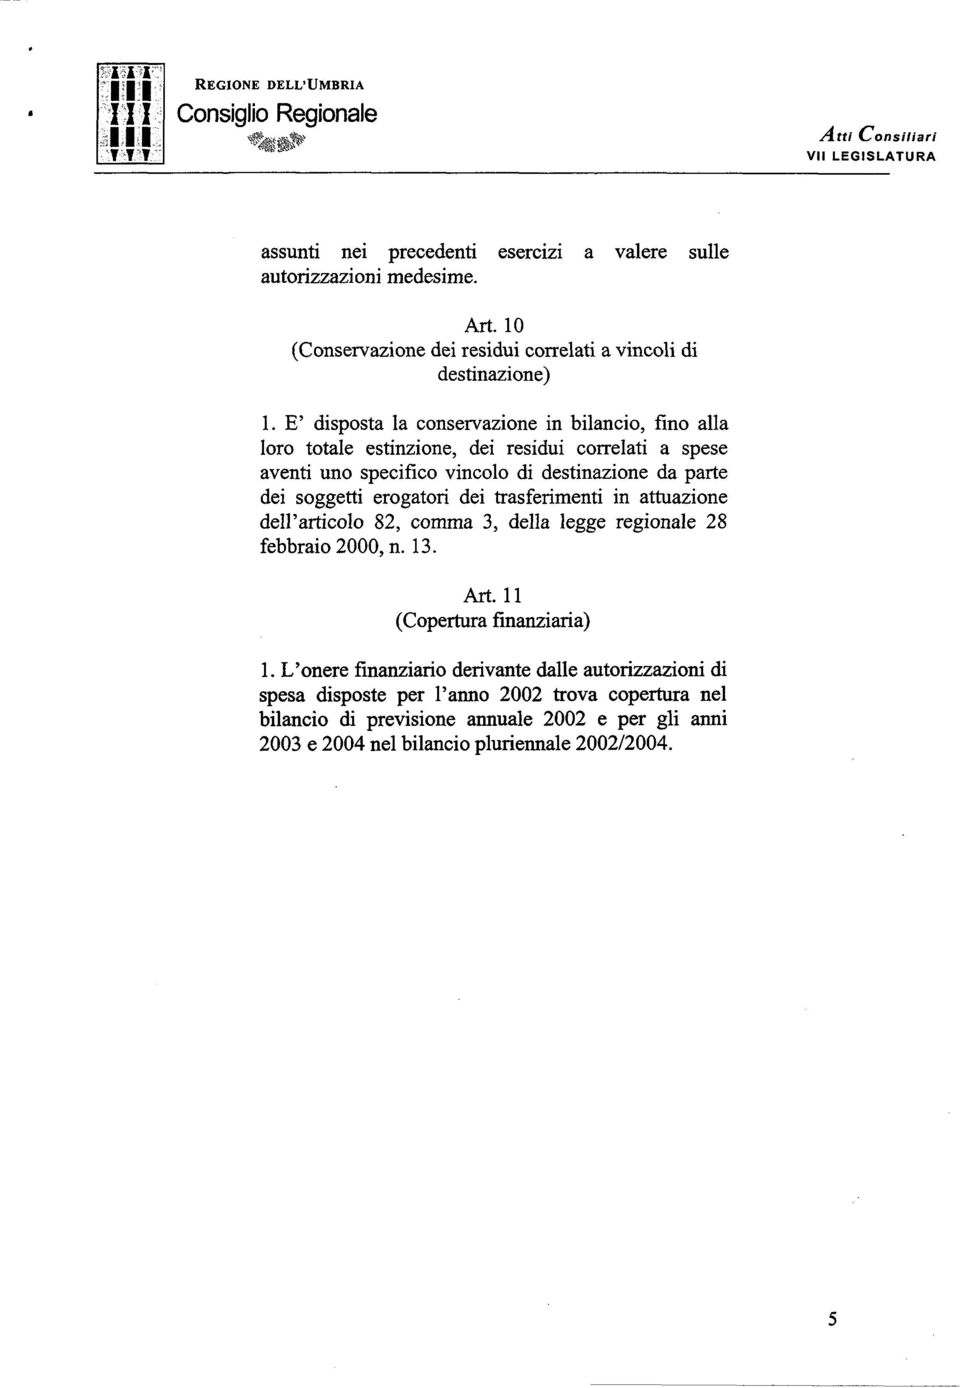 erogatori dei trasferimenti in attuazione dell articolo 82, comma 3, della legge regionale 28 febbraio 2000, n. 13. Art. 11 (Copertura hìnziaria) 1.